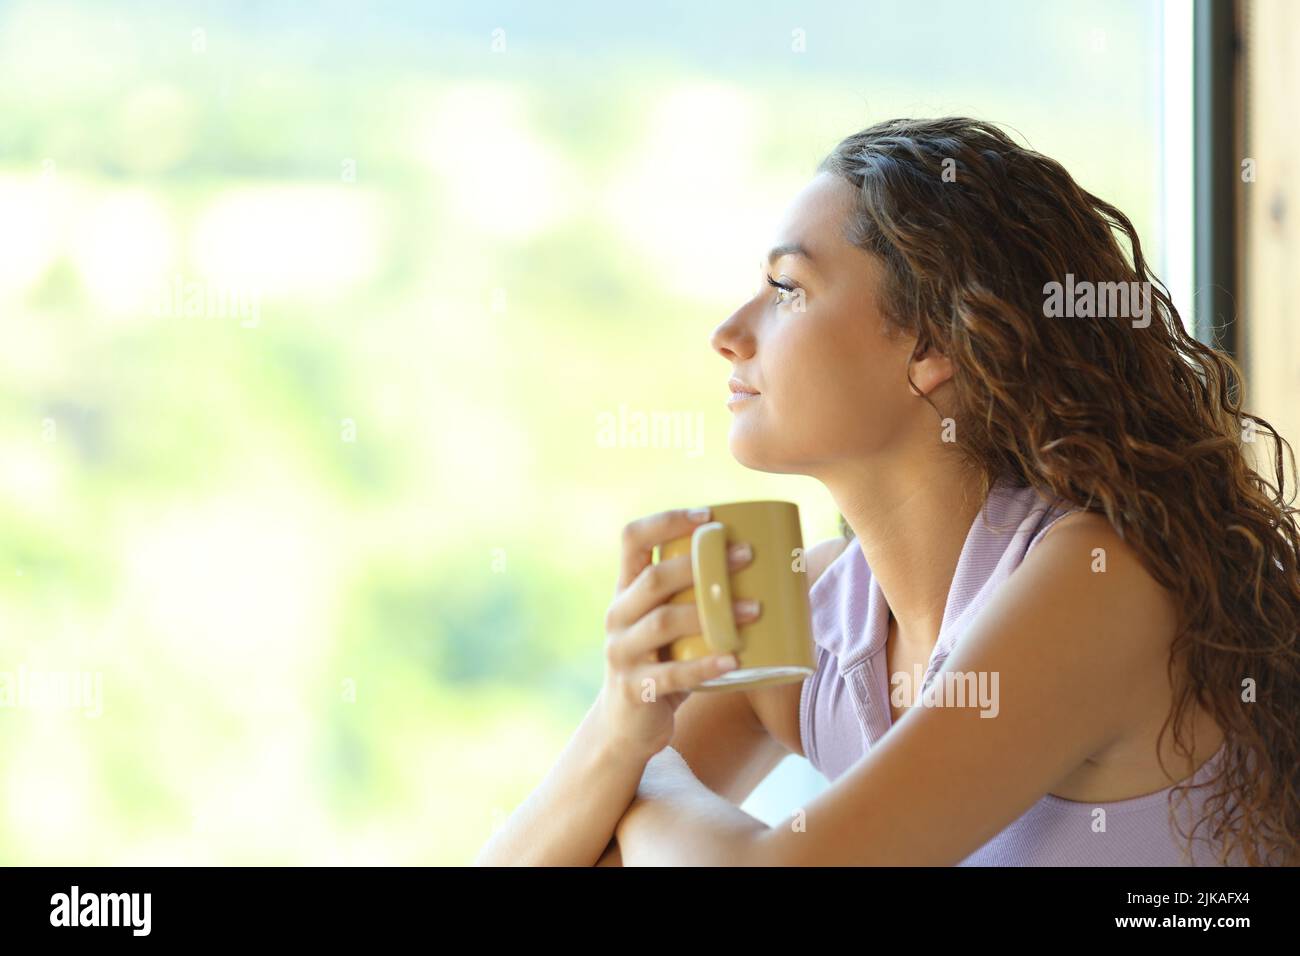 Ritratto della vista laterale di una donna che tiene una tazza di caffè rilassante guardando attraverso una finestra Foto Stock